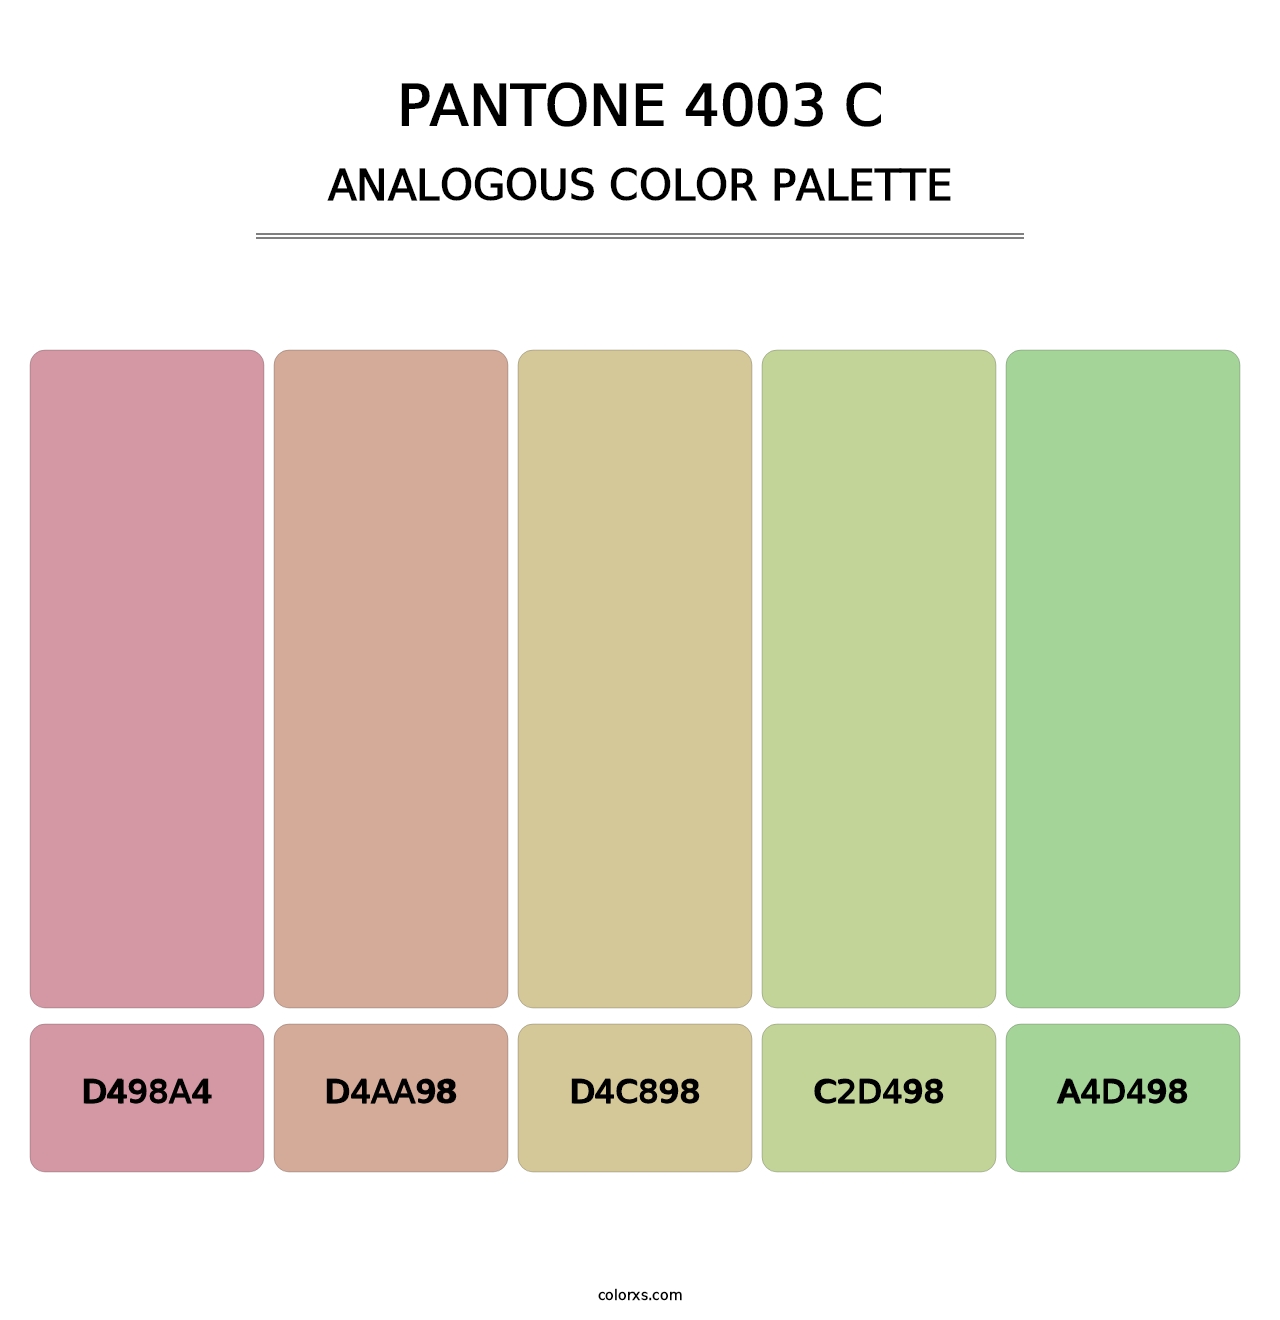 PANTONE 4003 C - Analogous Color Palette